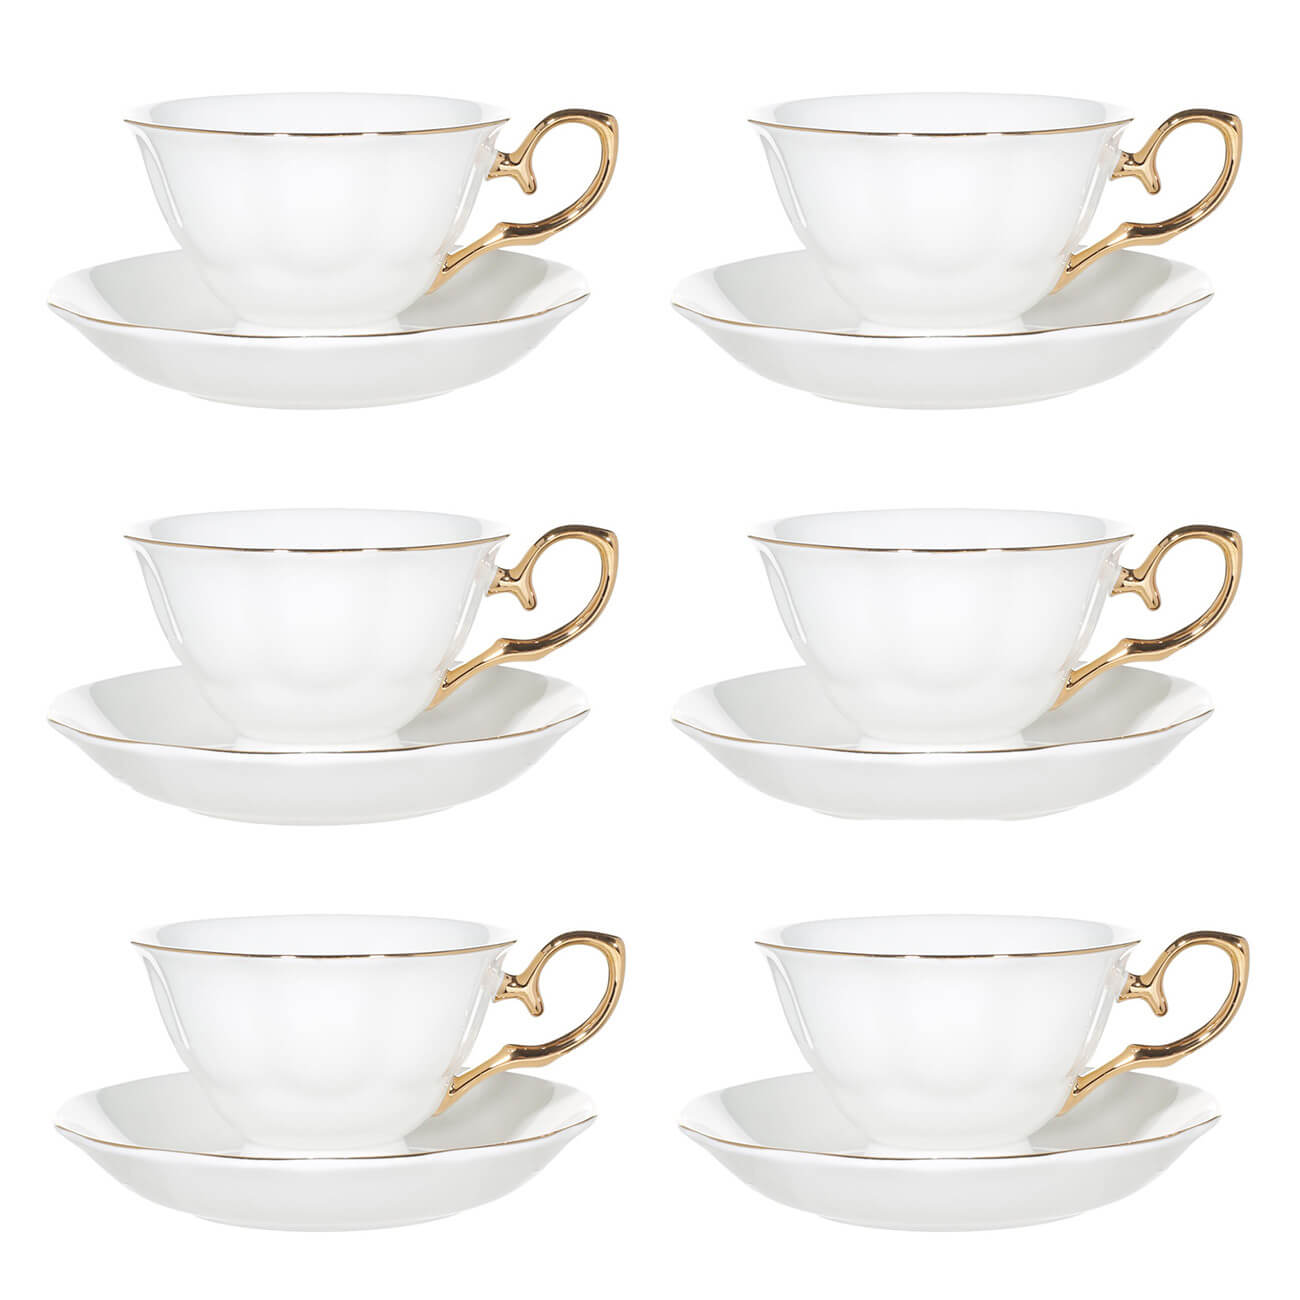 Пара чайная, 6 перс, 12 пр, 180 мл, фарфор F, бело-золотистая, Premium Gold пара чайная для завтрака 1 перс 2 пр 480 мл фарфор f белая контурные лица face